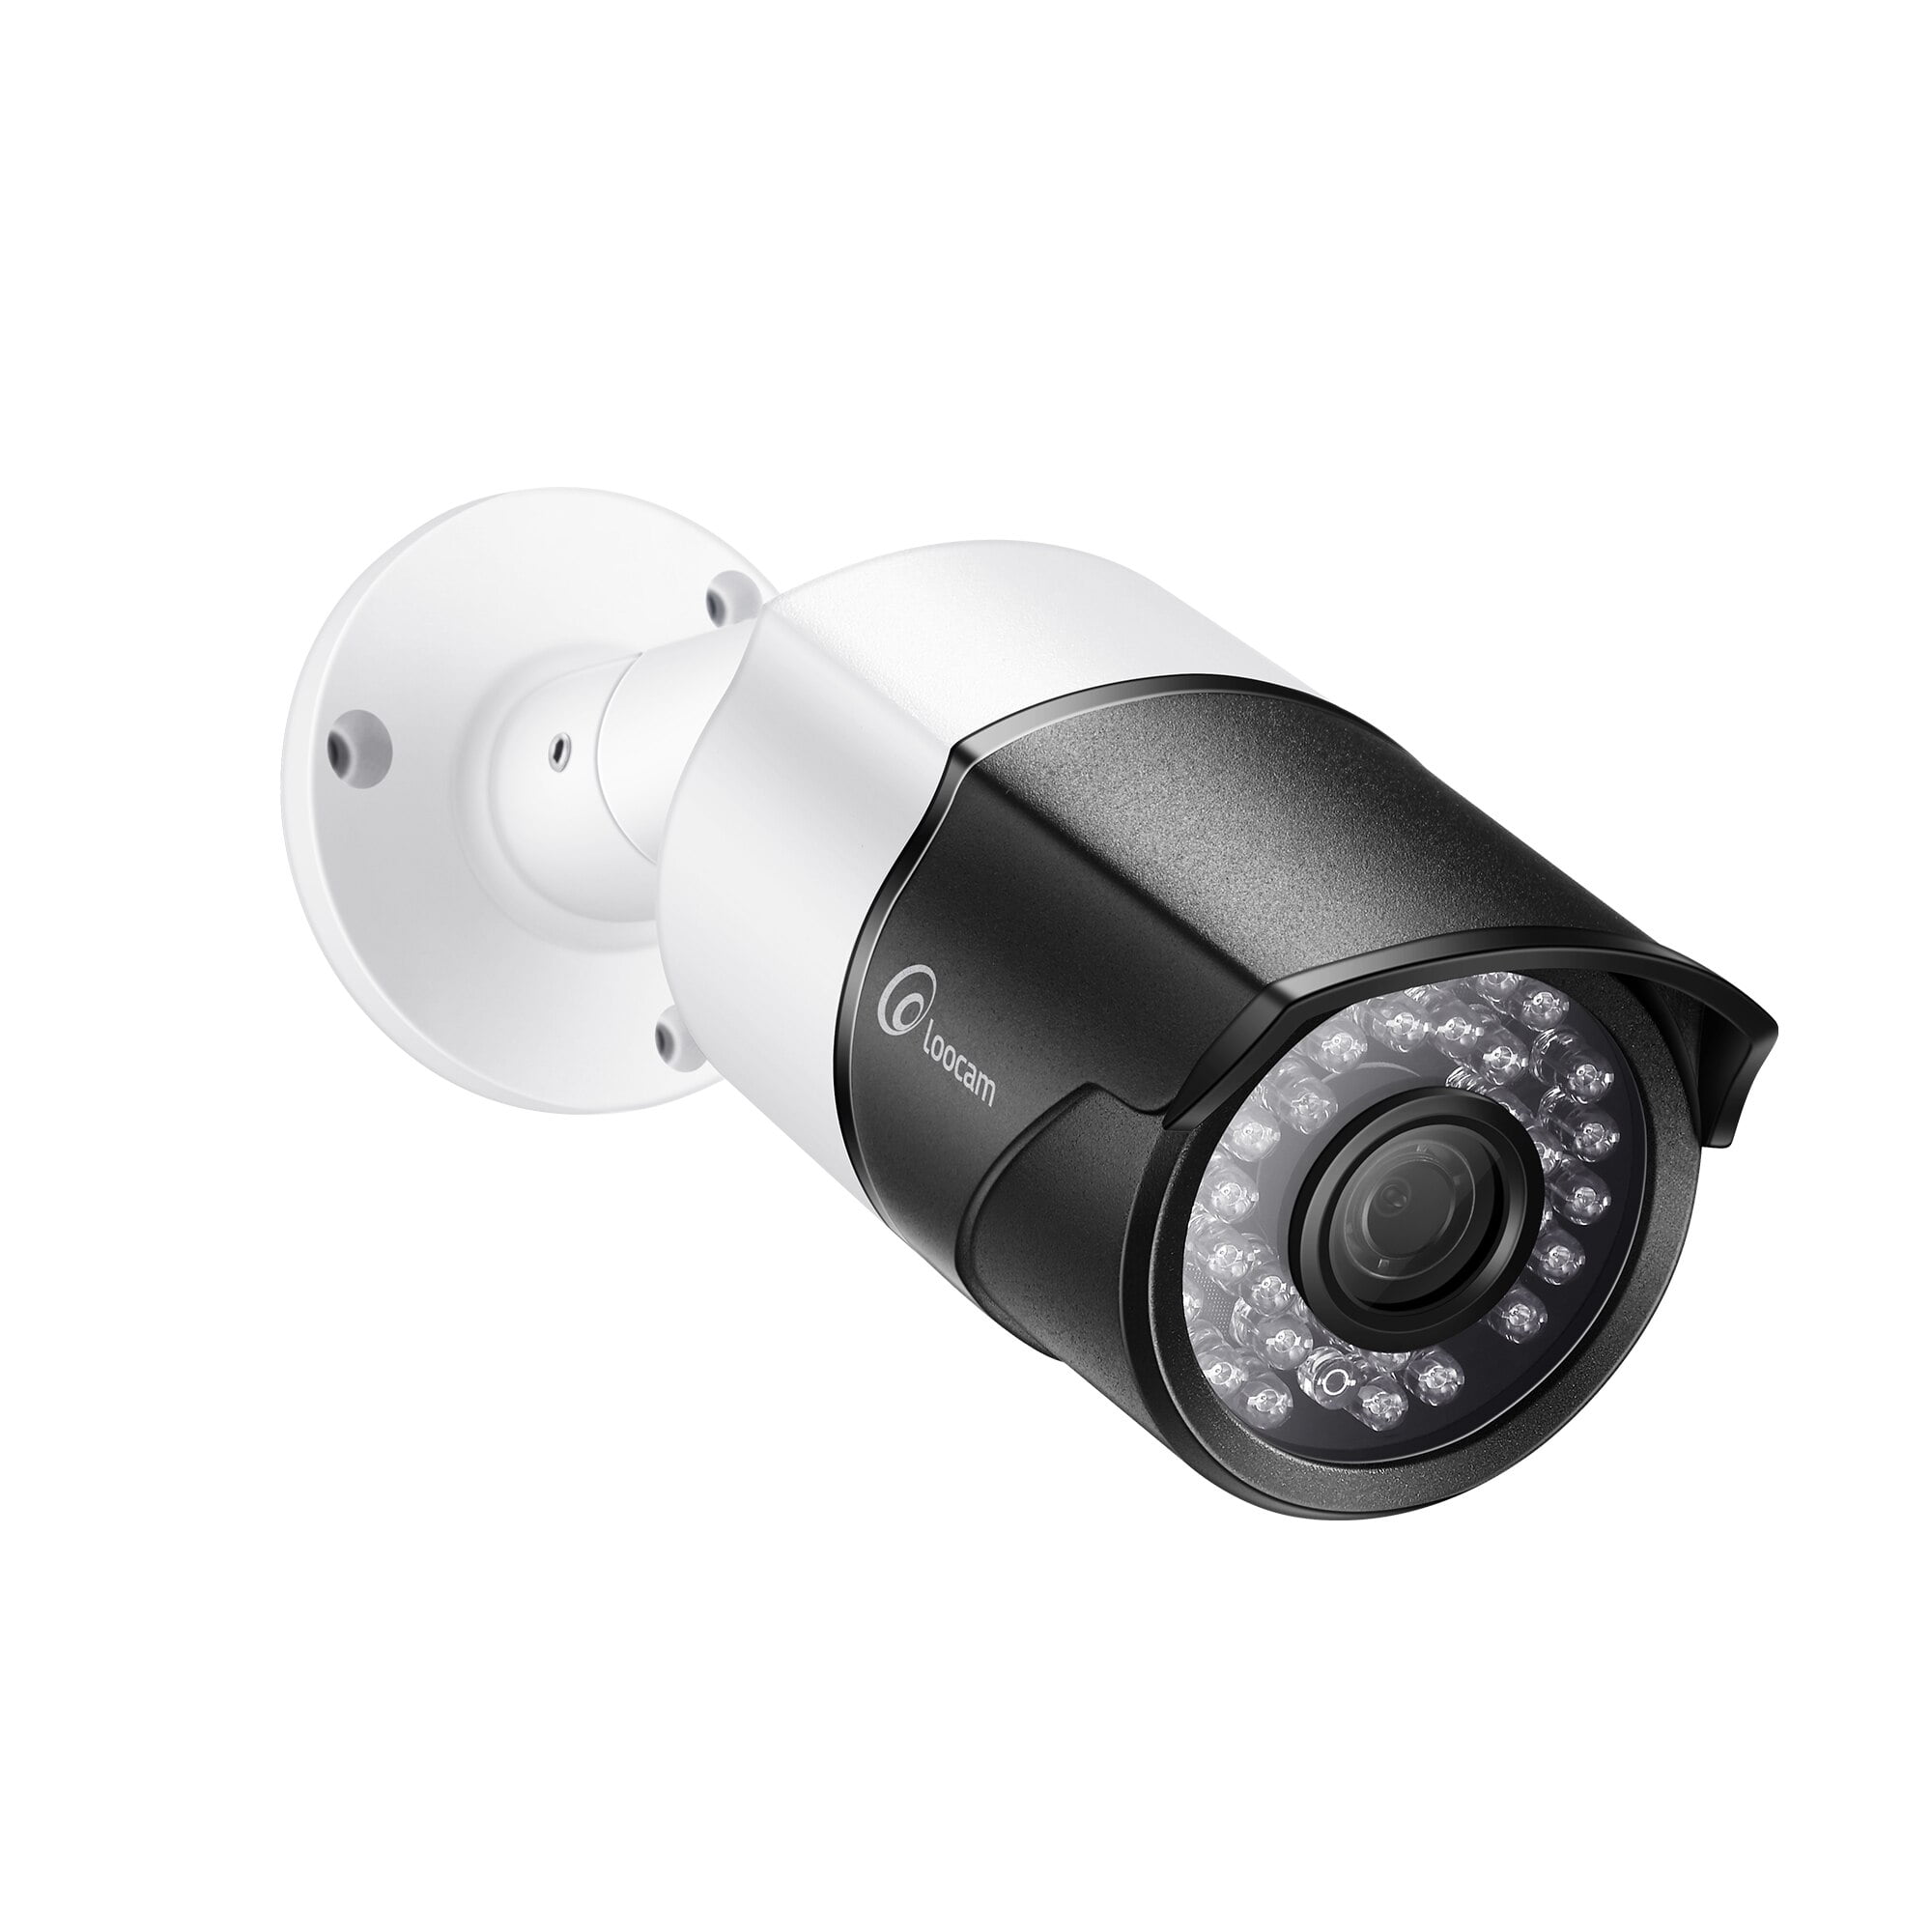 poe outdoor security cameras